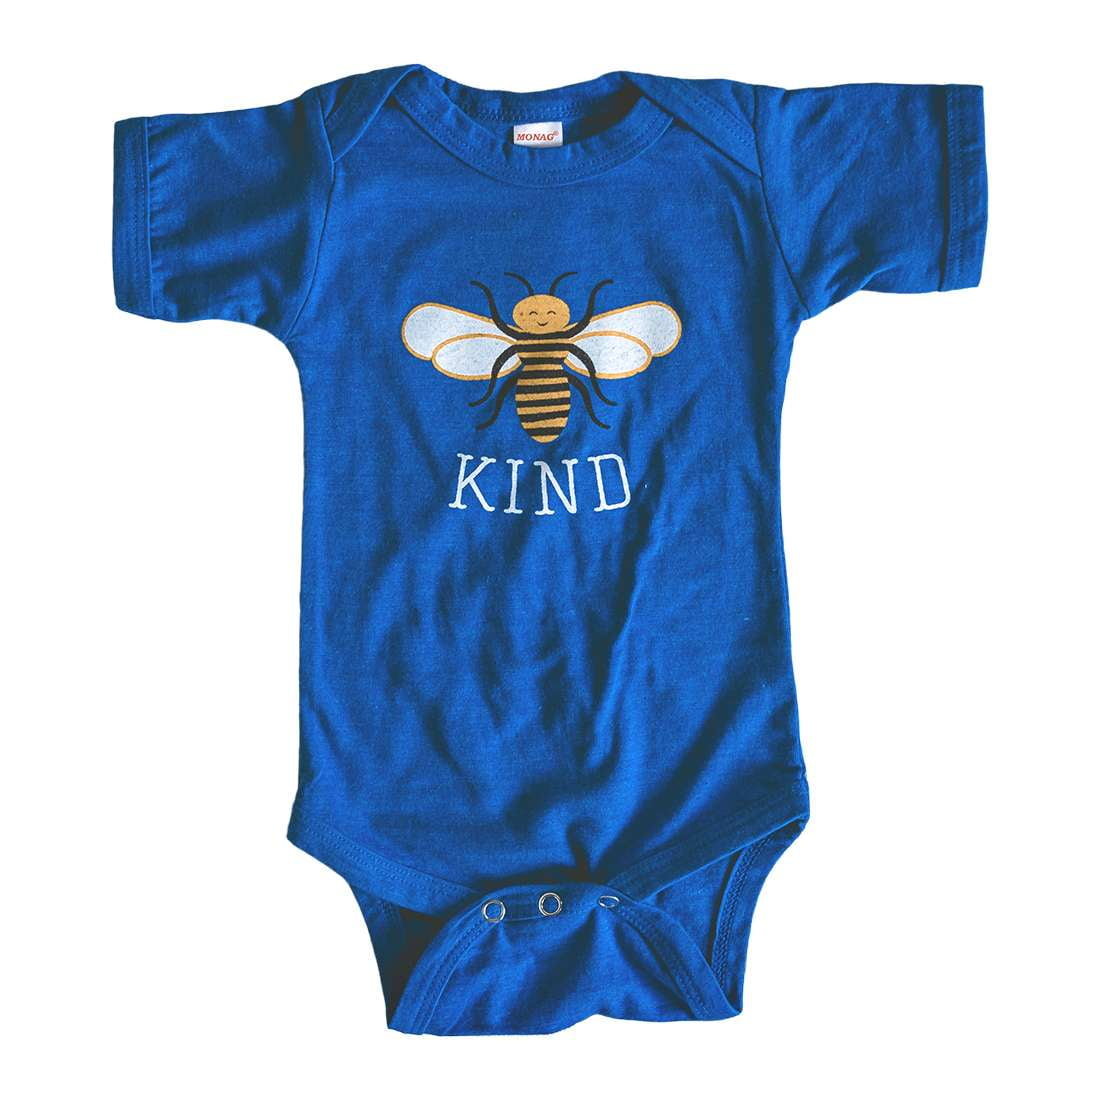 Bee Kind baby bodysuit - Sweetpea and Co.